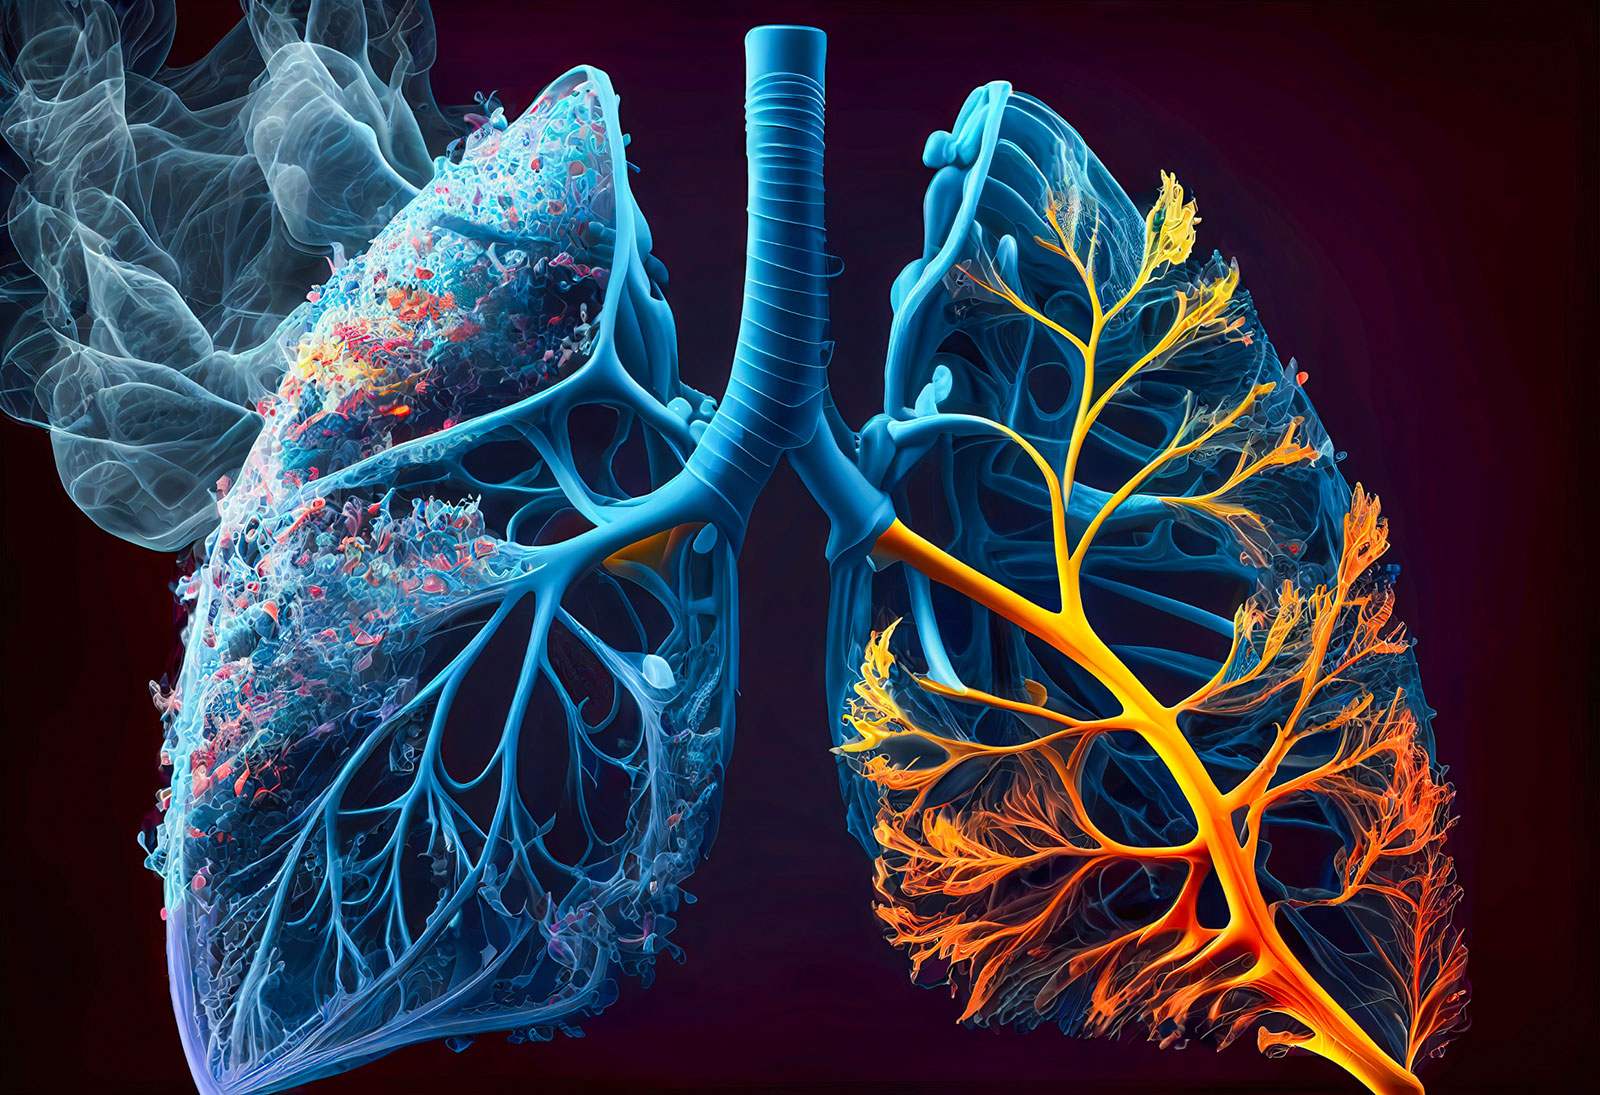 Riparare i danni dal FUMO ai polmoni è possibile?